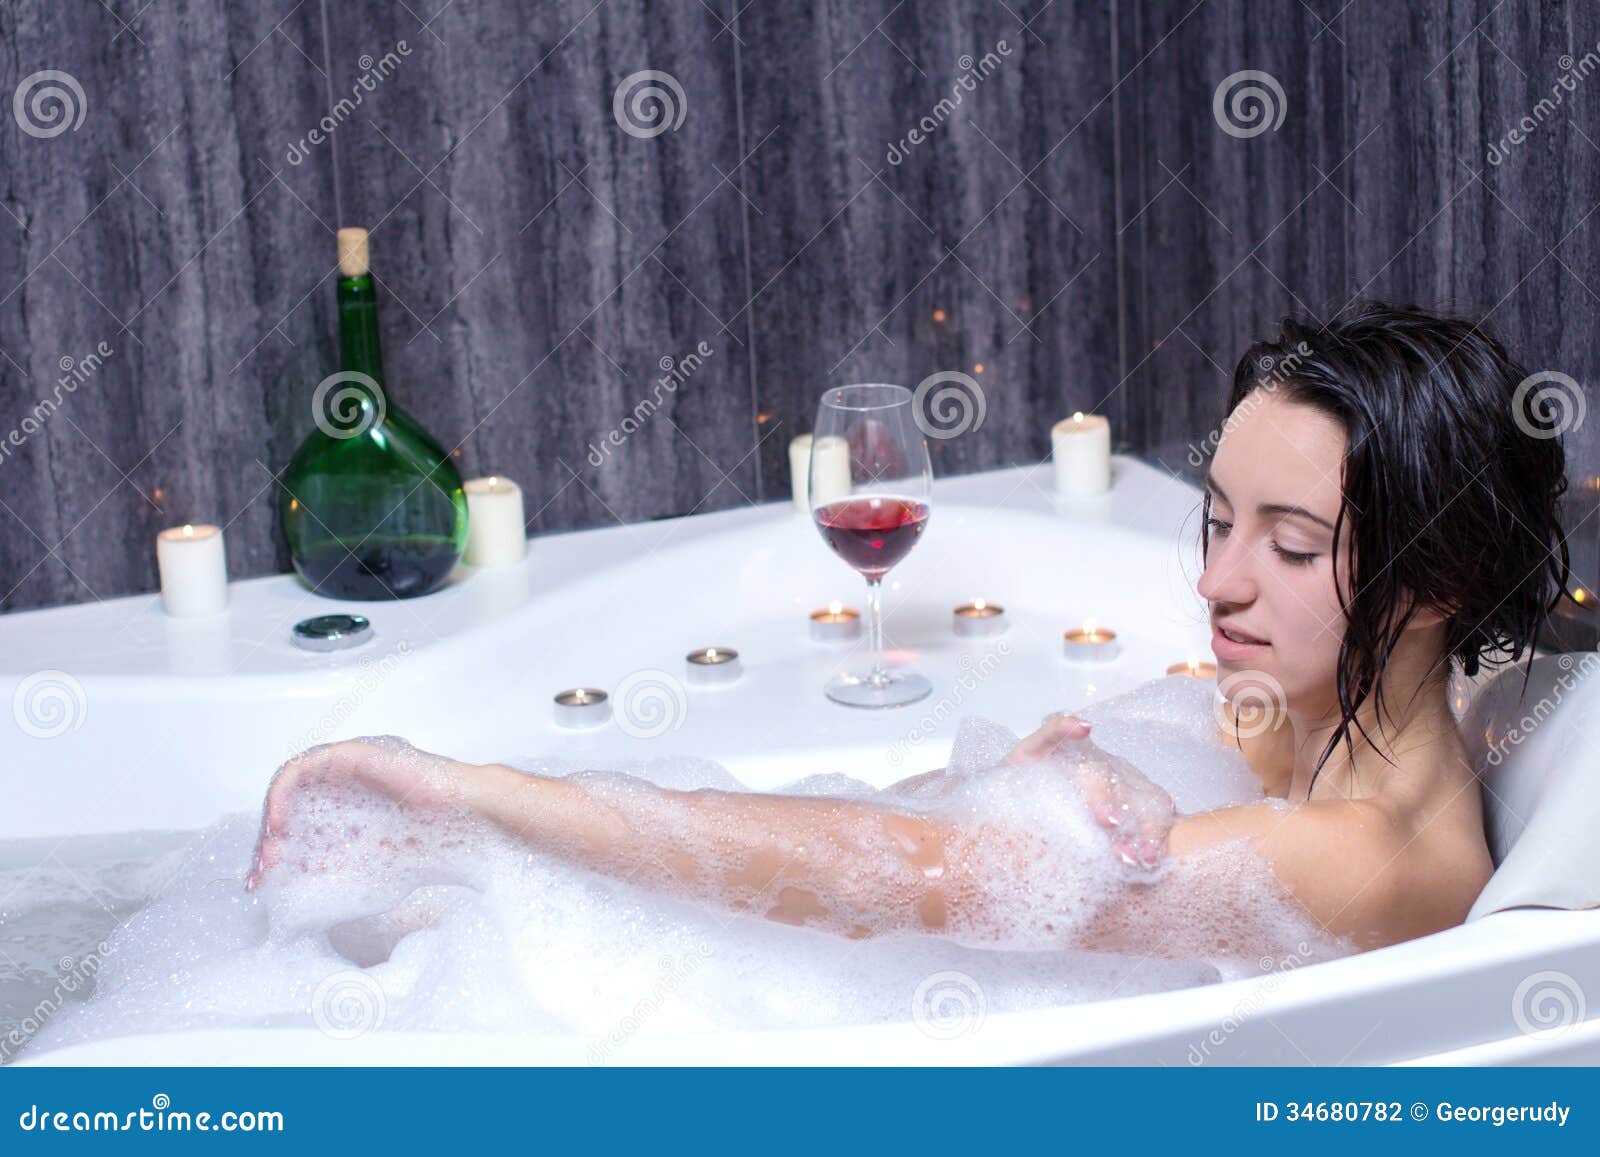 Жена купается в ванной. Девушка в джакузи. Ванна с шампанским. Девушка в джакузи с вином. Женщина в ванной с шампанским.